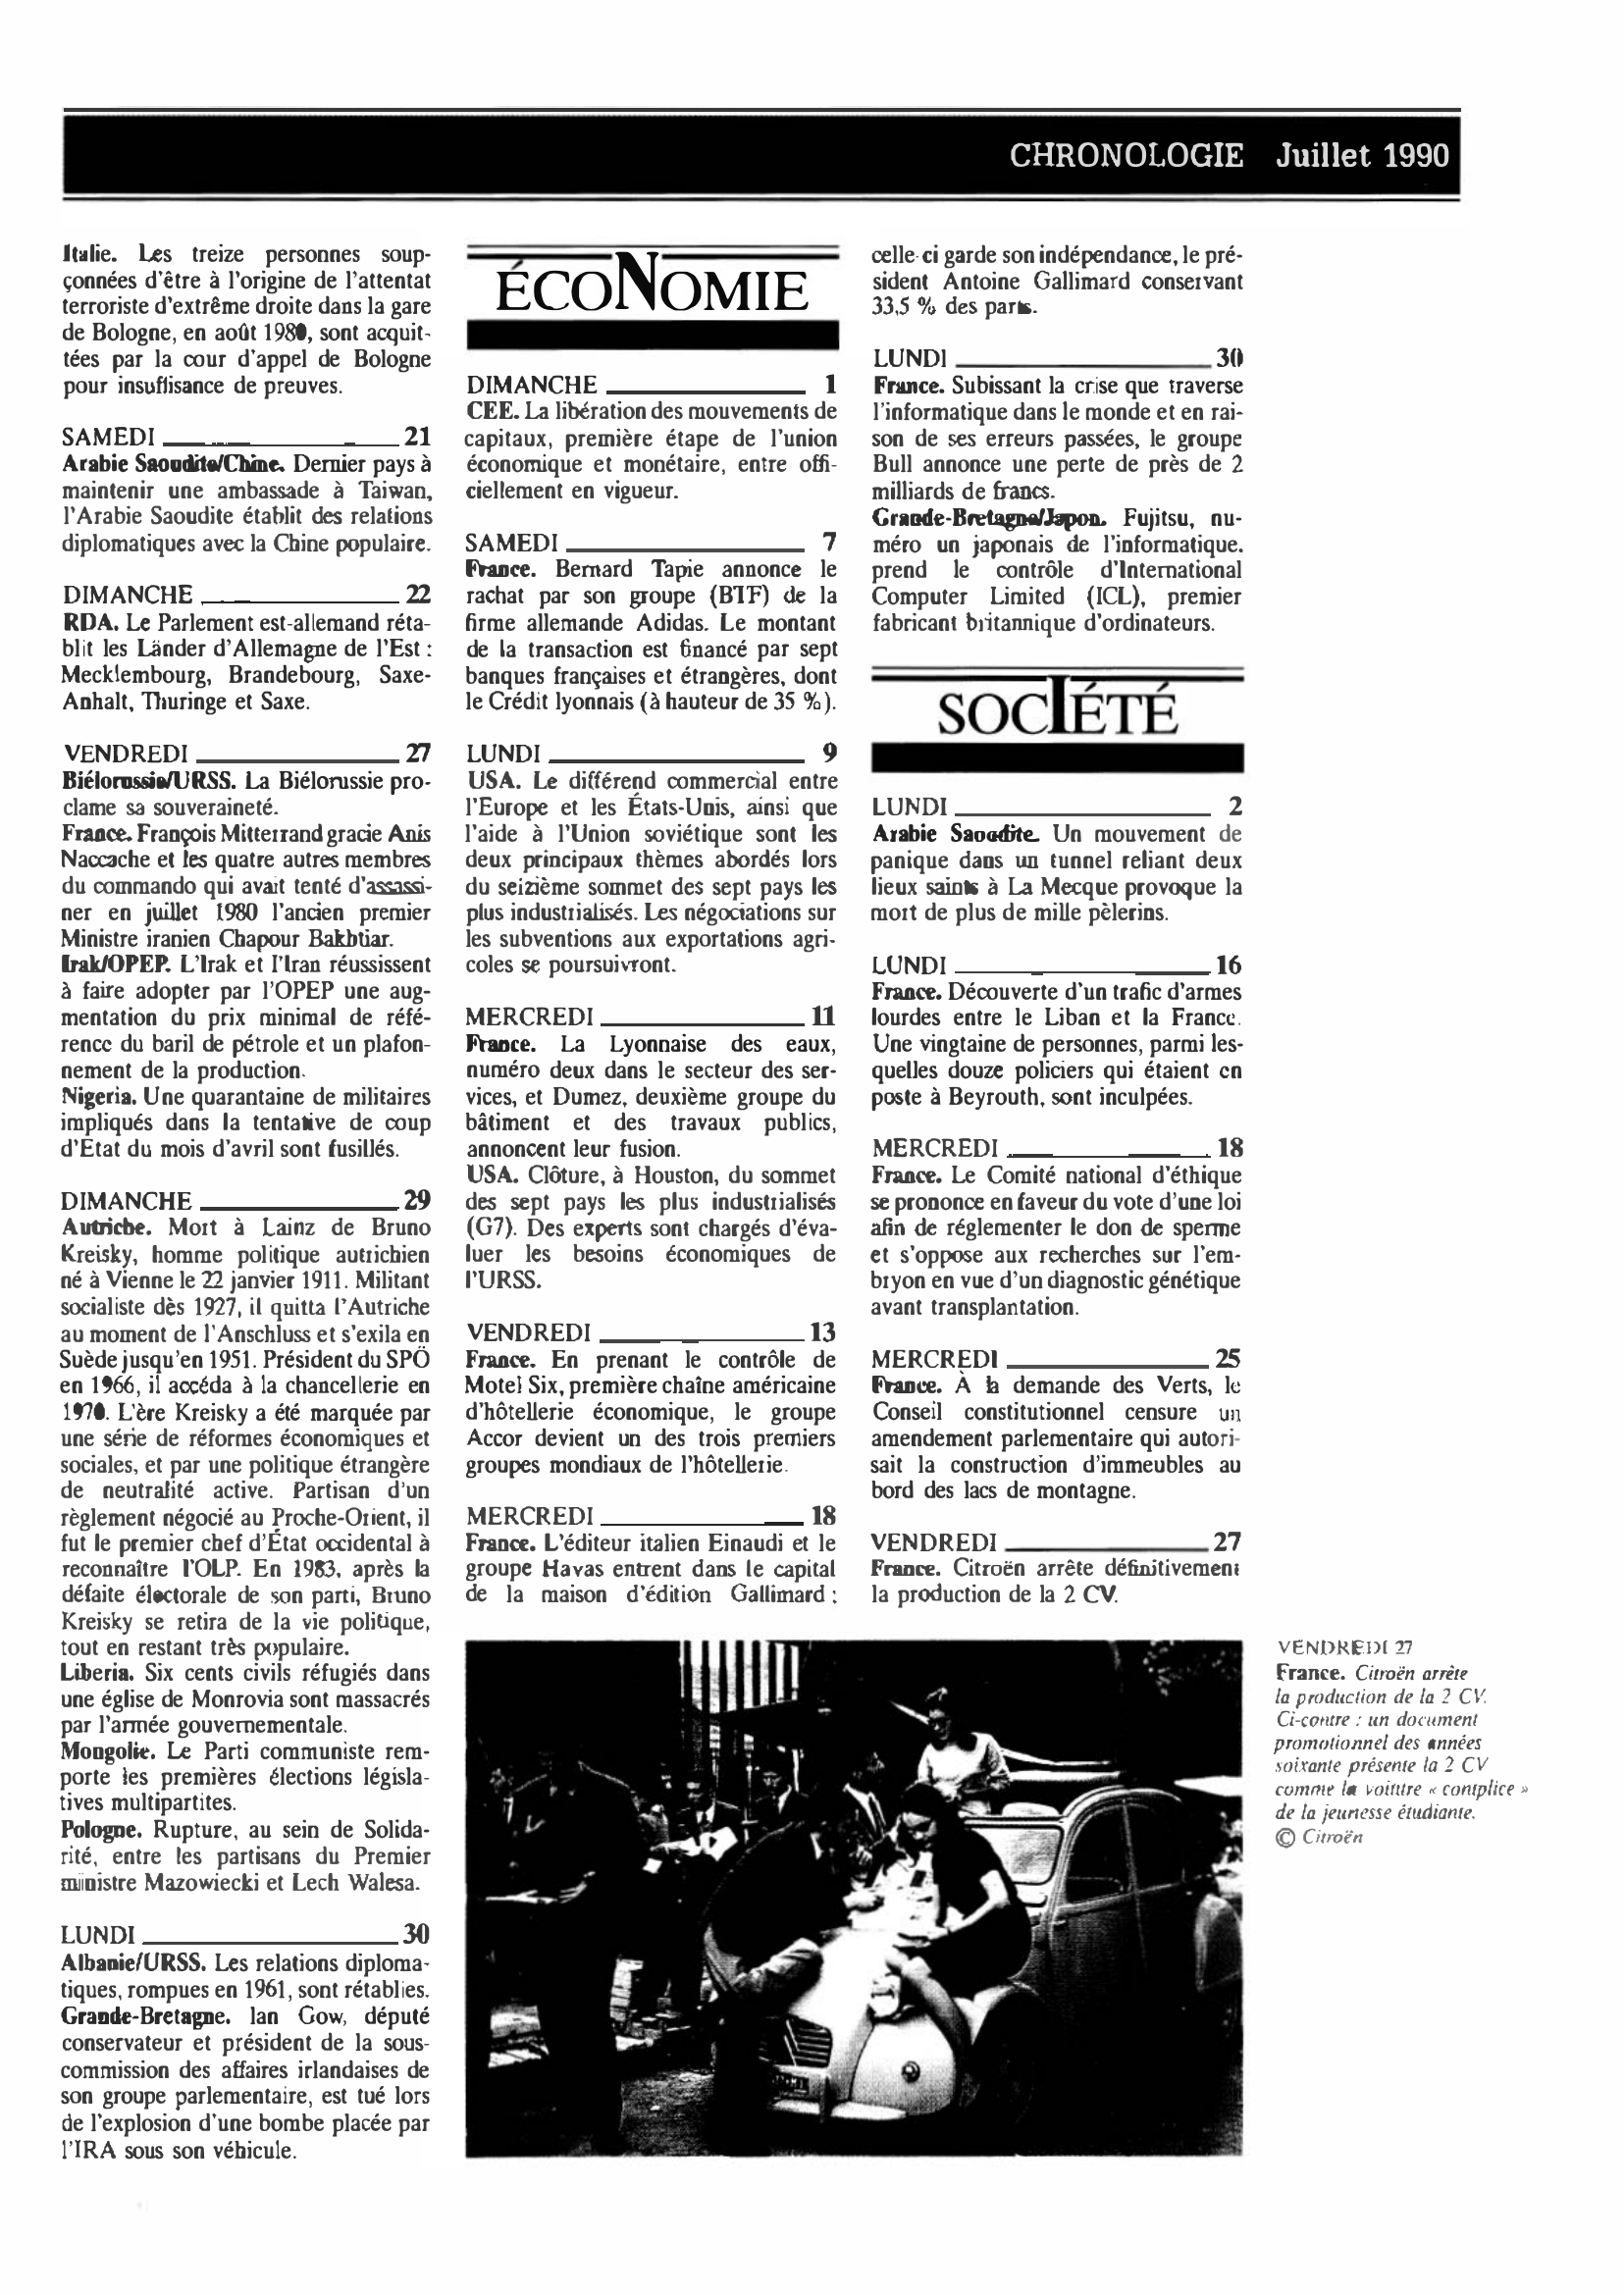 Prévisualisation du document CHRONOLOGIE Juillet 1990 dans le monde (histoire chronologique)